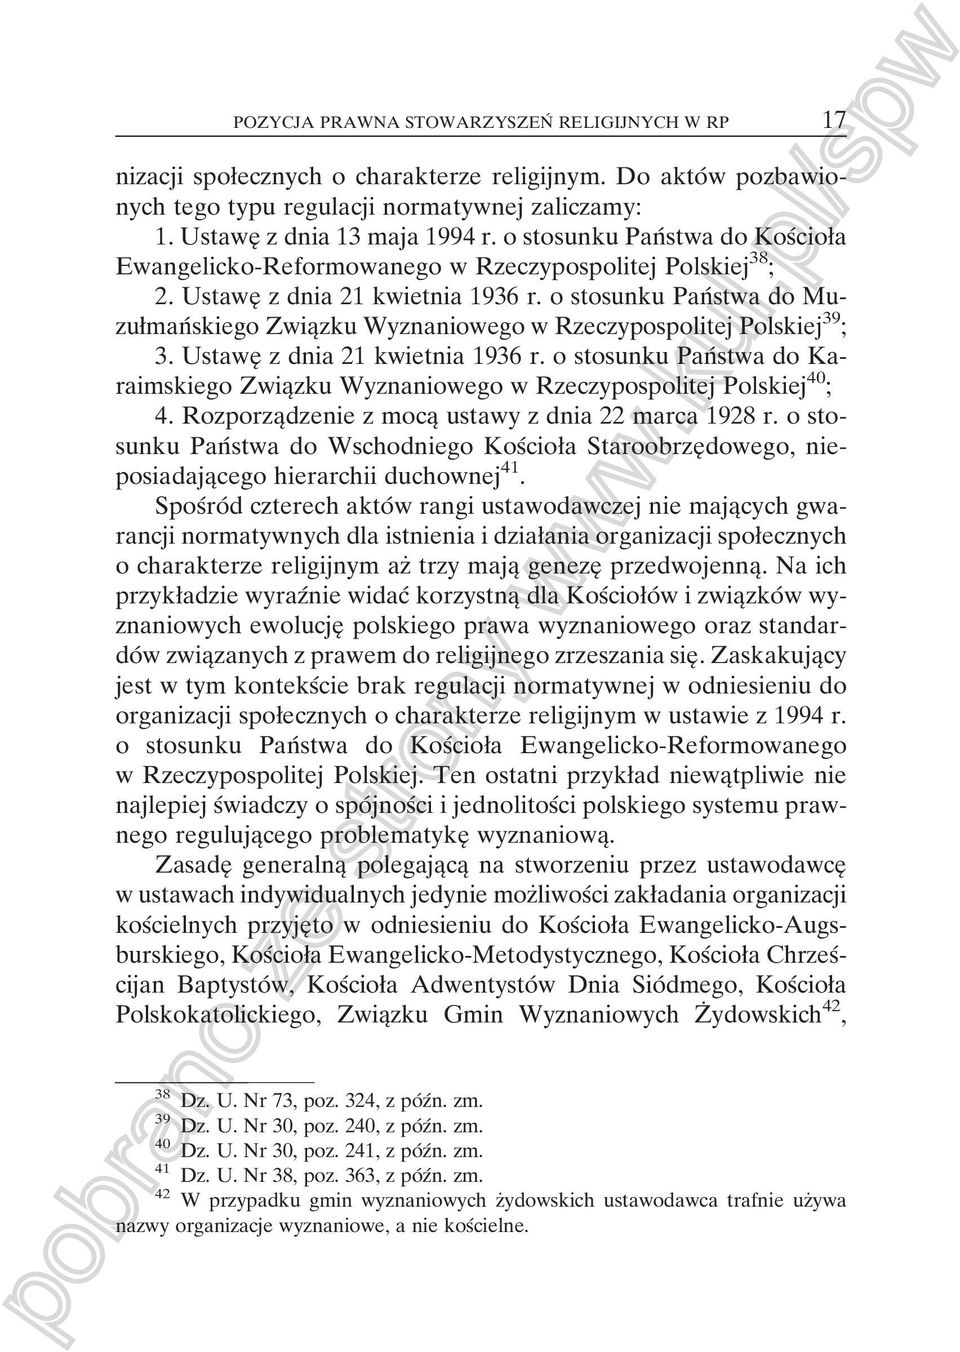 o stosunku PanÂstwa do MuzuømanÂskiego ZwiaÎzku Wyznaniowego w Rzeczypospolitej Polskiej 39 ; 3. UstaweÎ z dnia 21 kwietnia 1936 r.